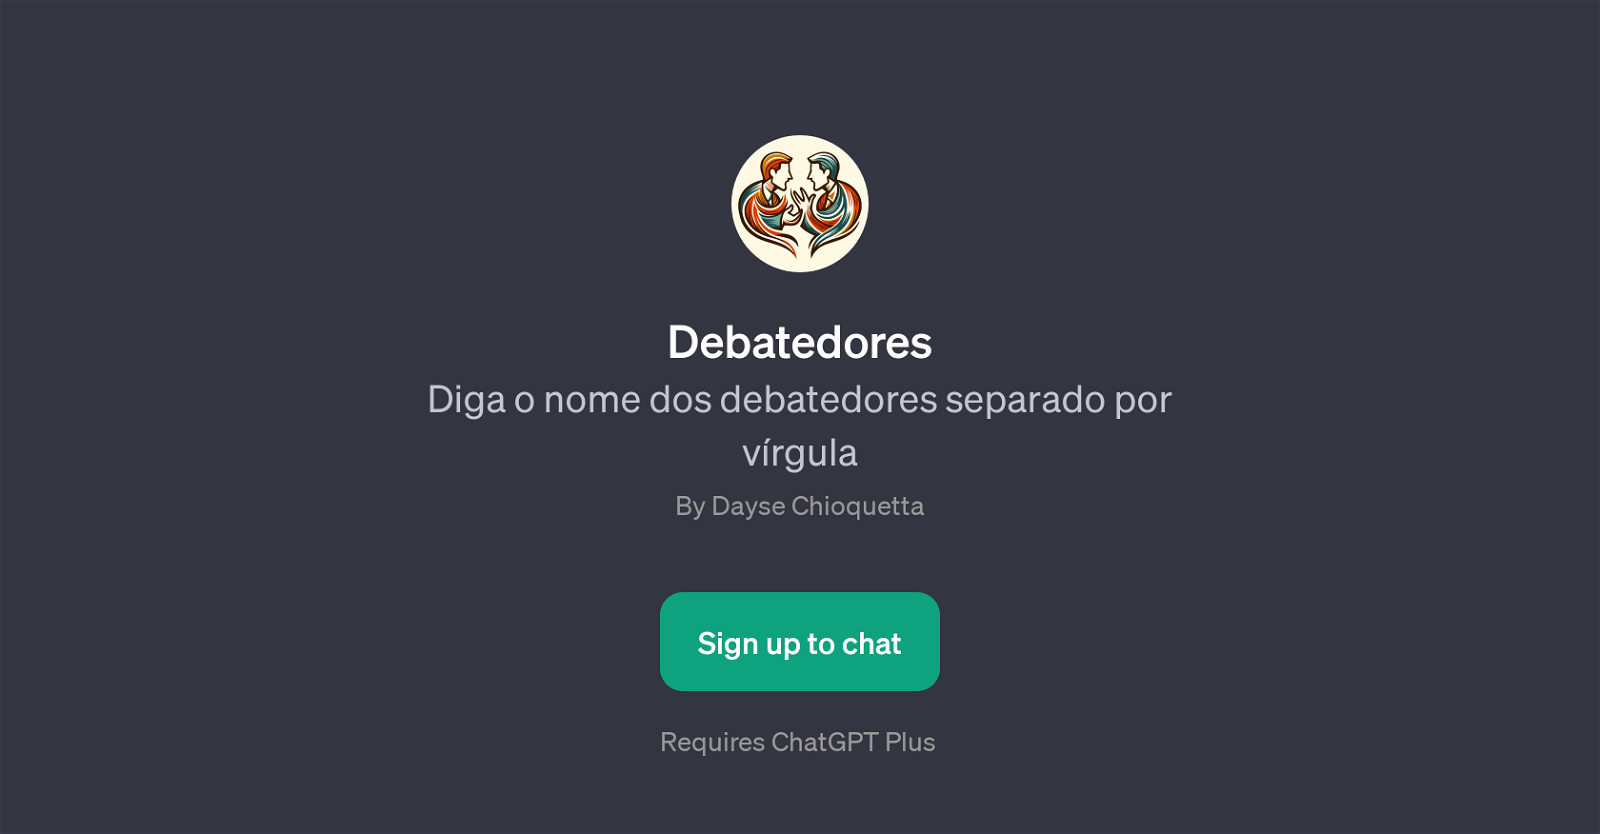 Debatedores website